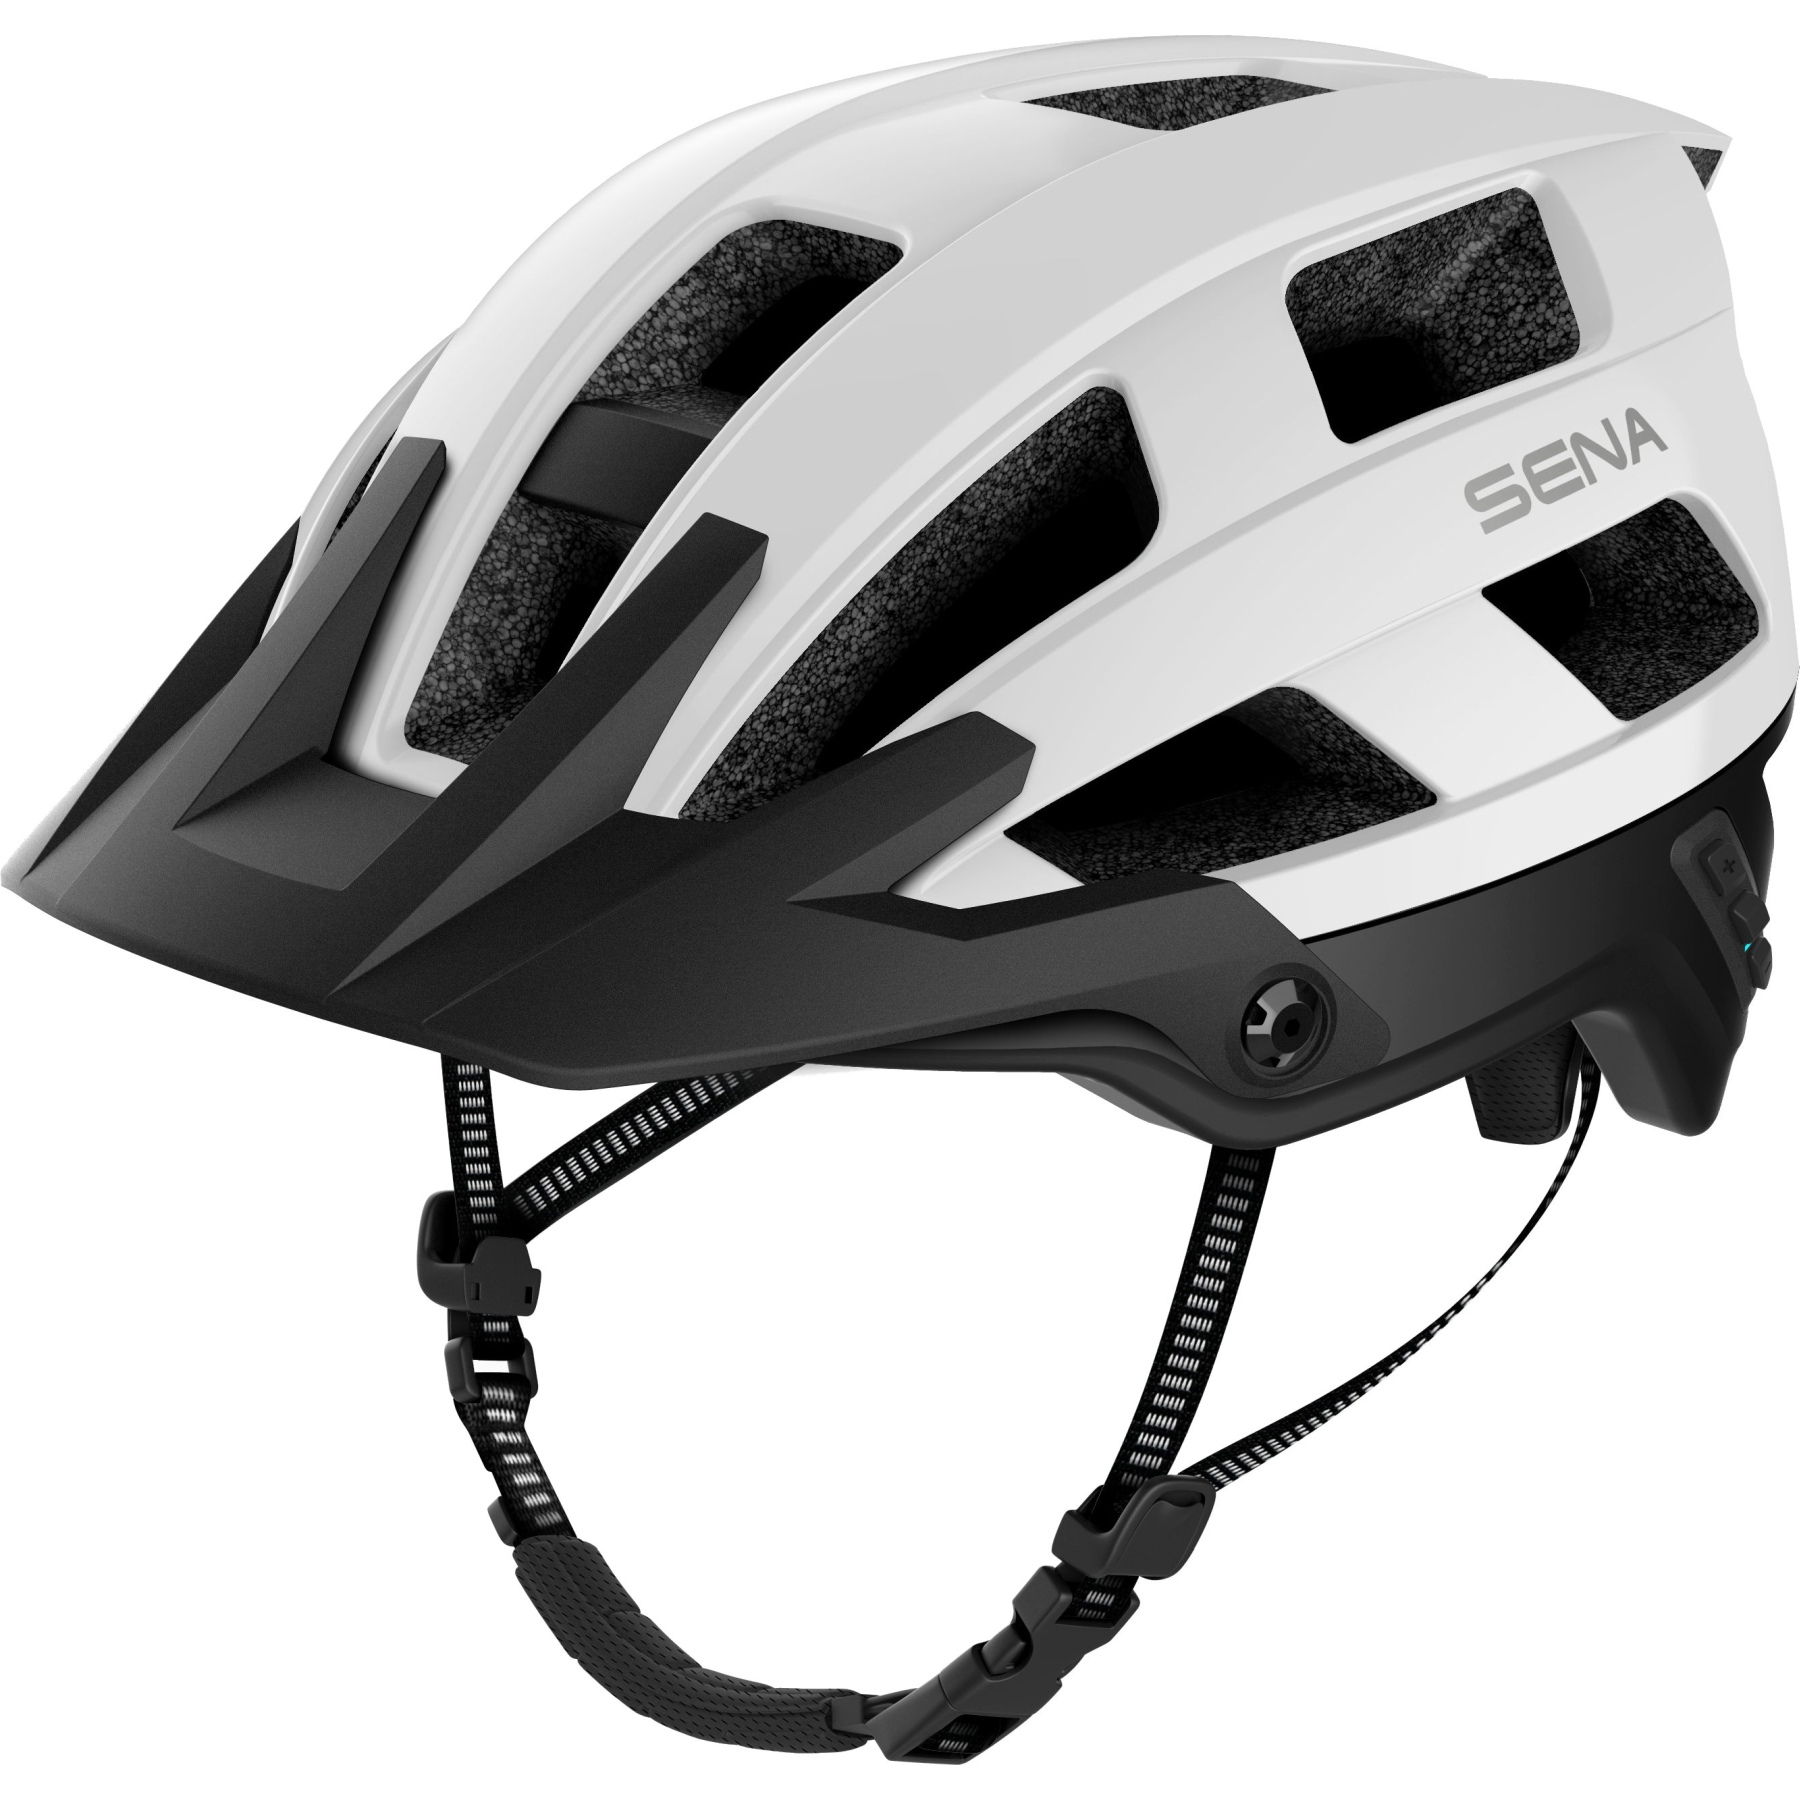 Produktbild von SENA M1 Smart MTB Helm - Matte White